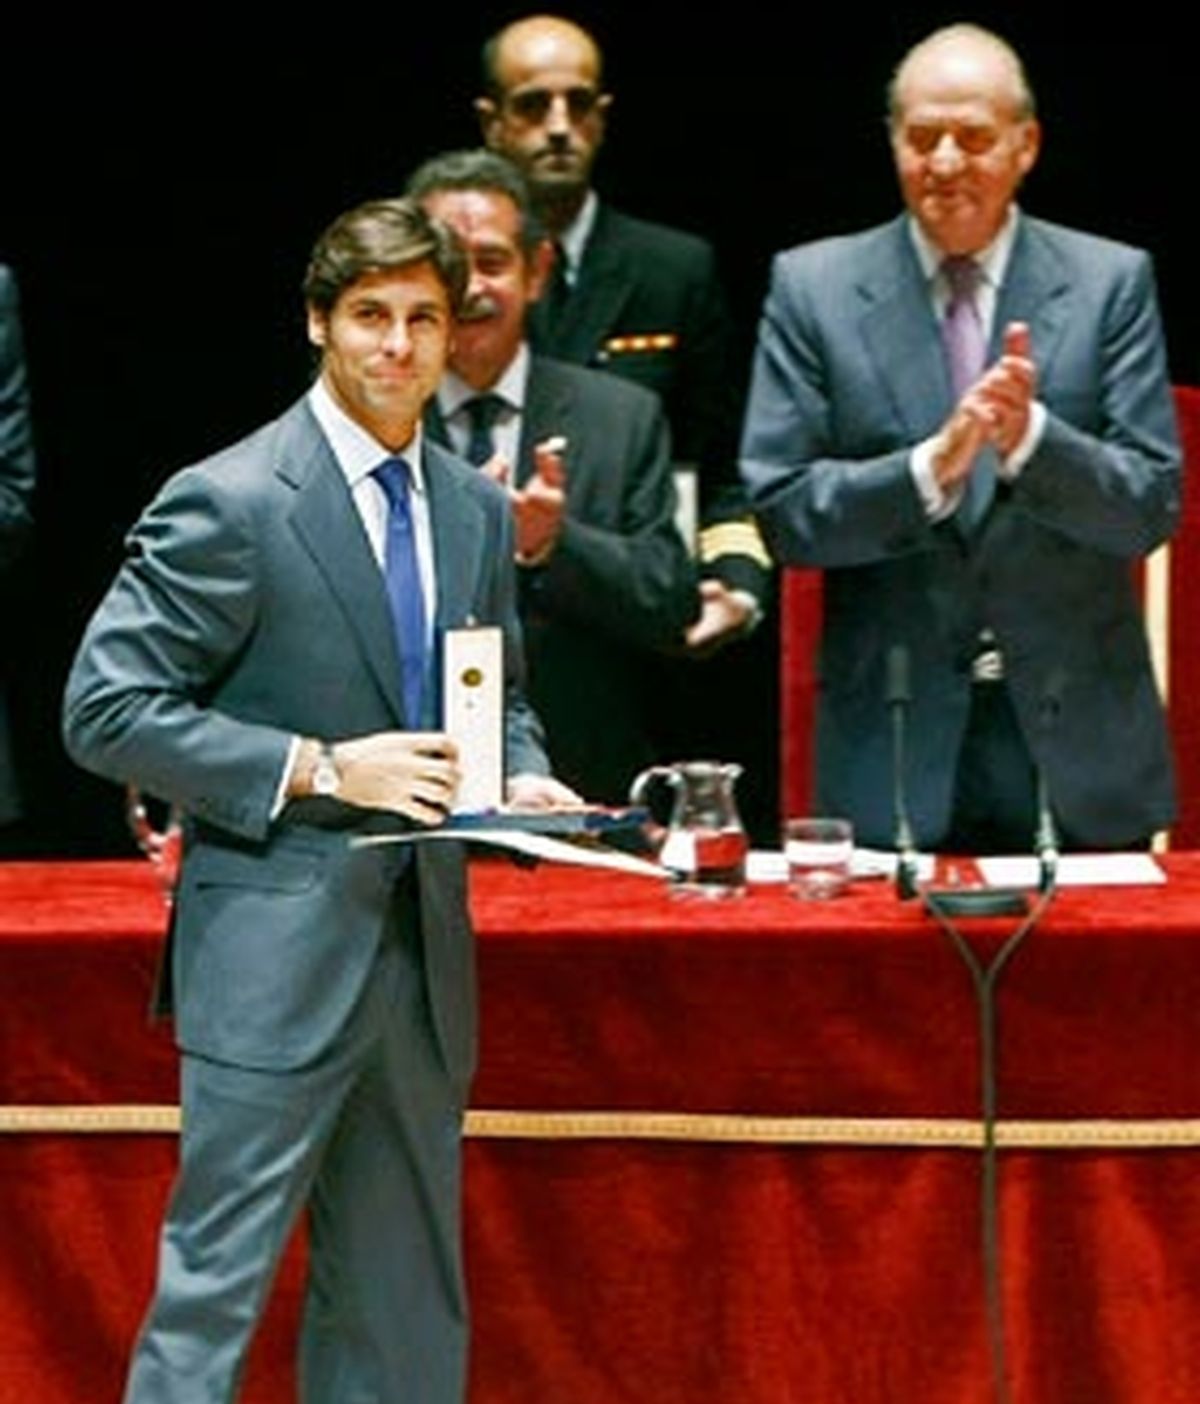 Fran Rivera recibe la Medalla de Oro al Mérito en las Bellas Artes, en una ceremonia presidida por los Reyes de España en el Palacio de Festivales de Cantabria.